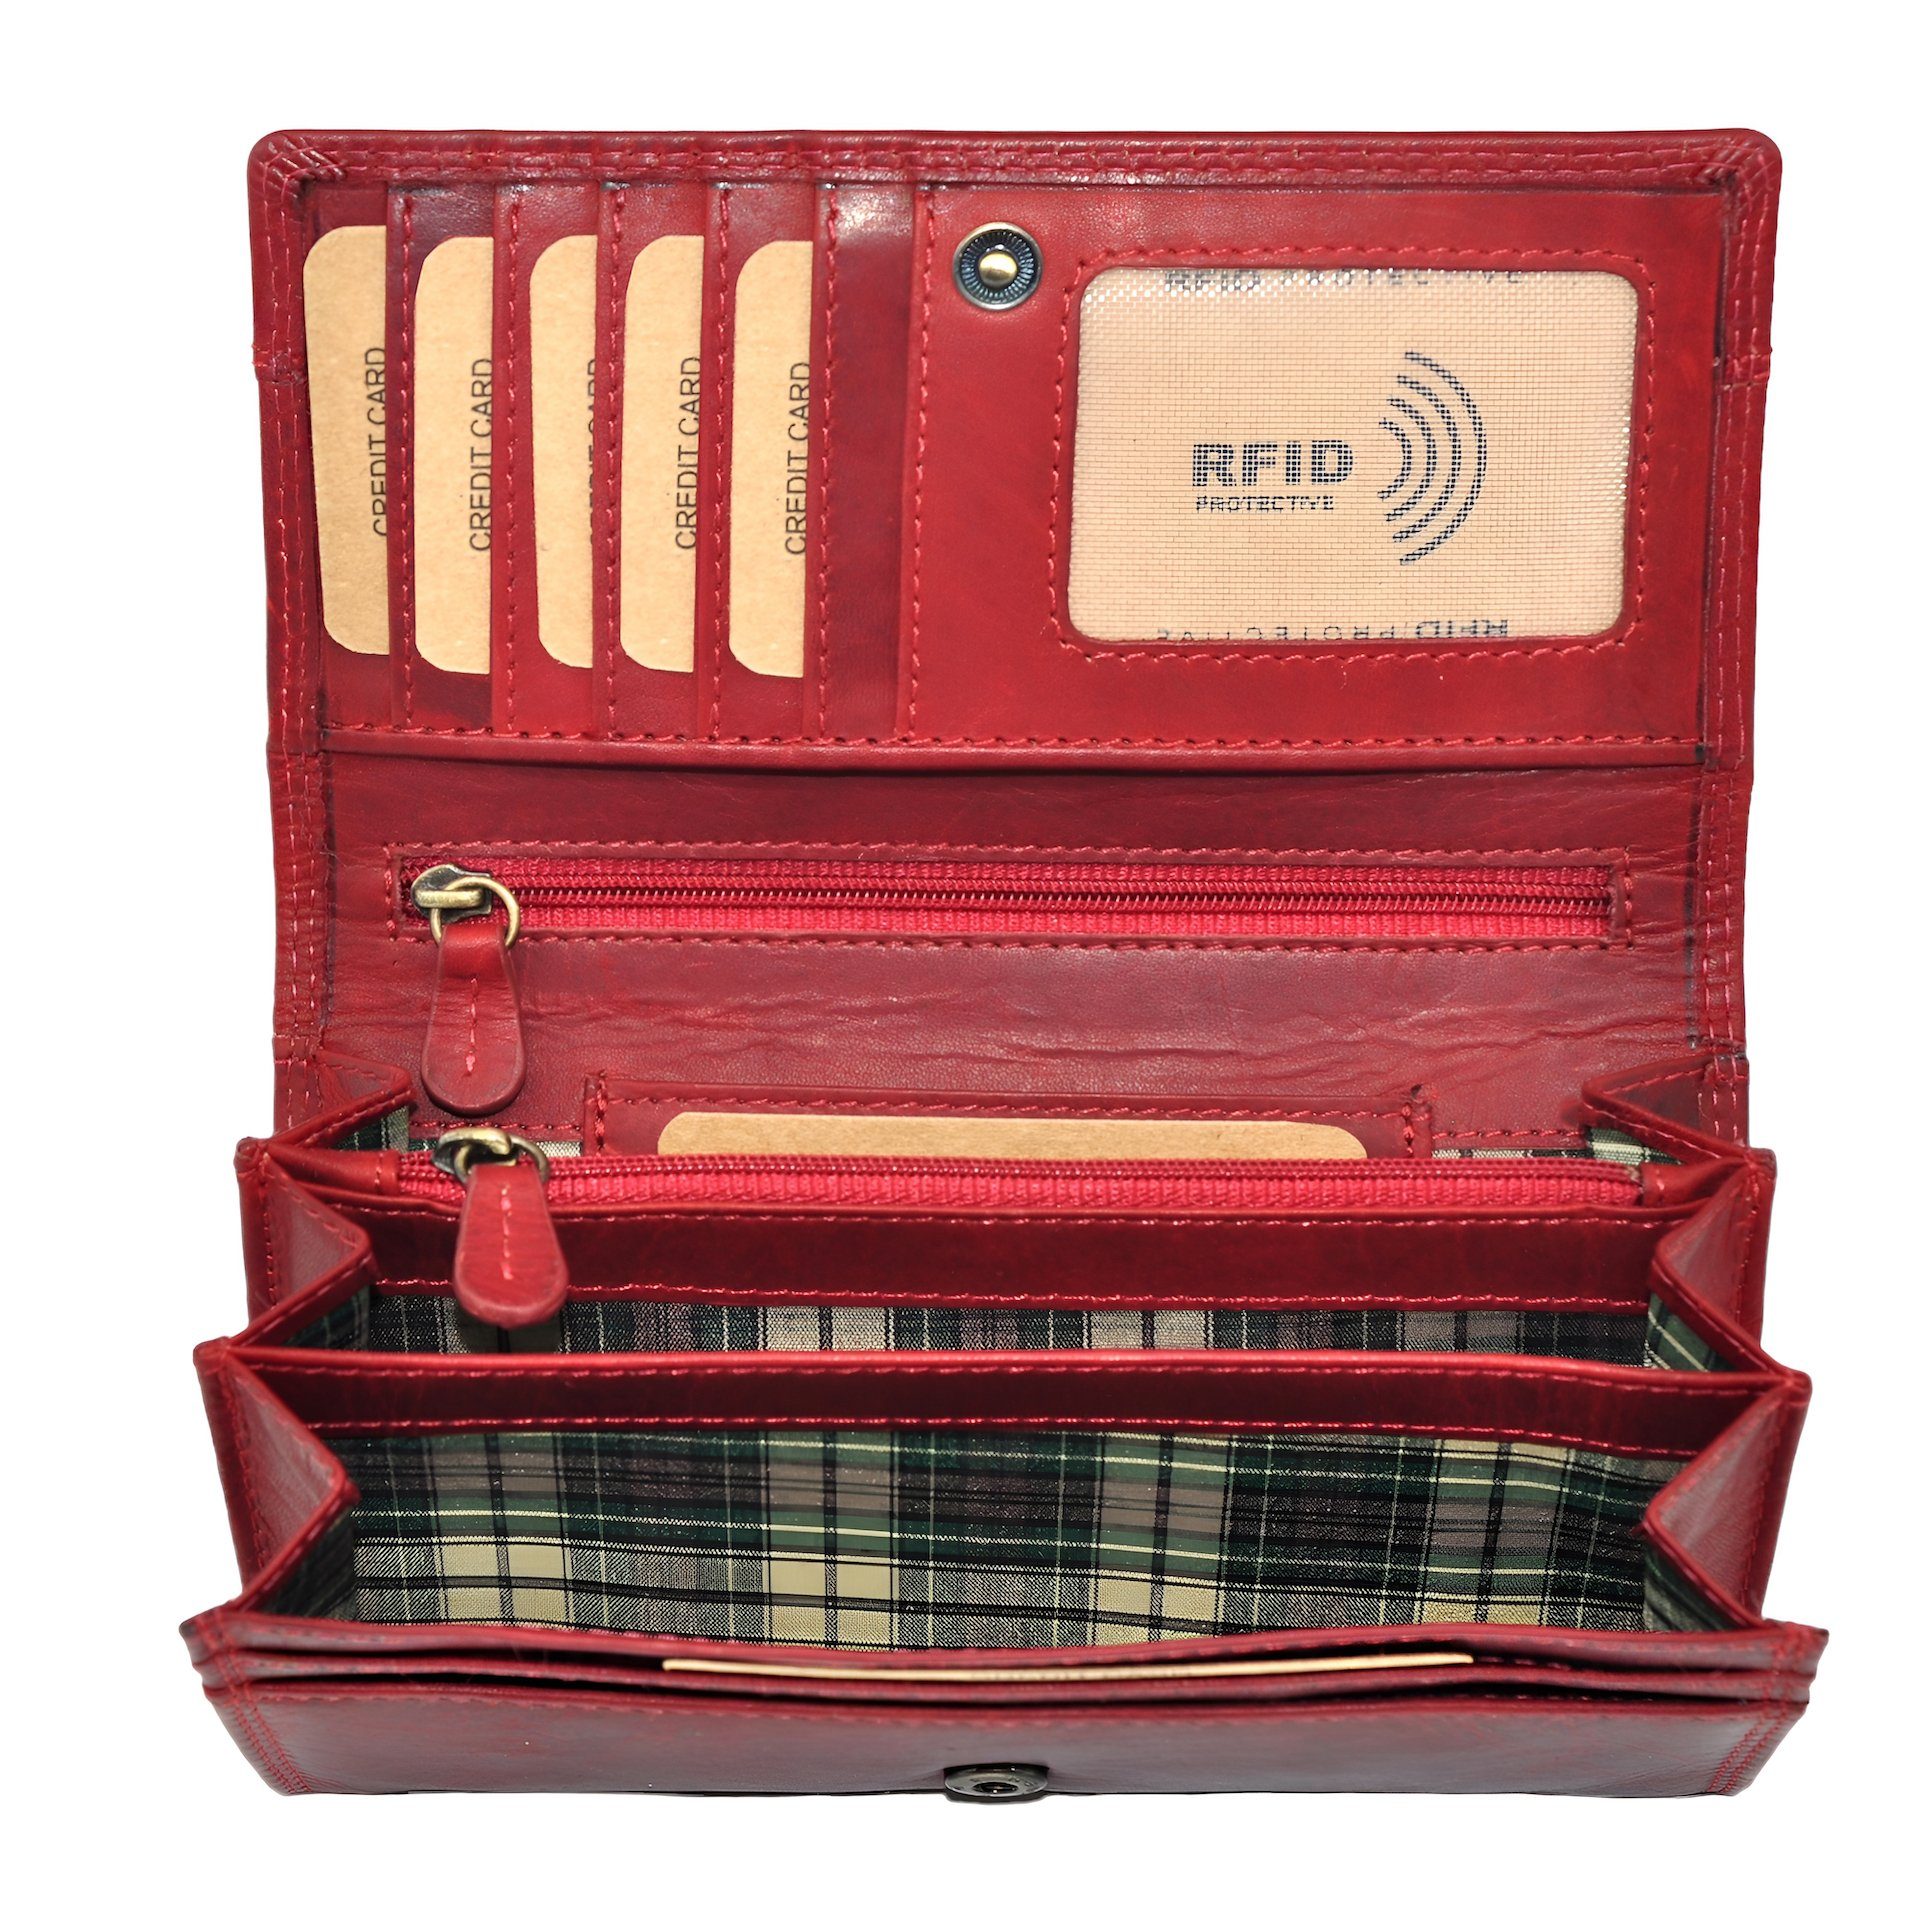 Benthill Geldbörse Damen Echt Leder Portemonnaie Frauen Geldbeutel RFID Schmal und Lang, RFID-Schutz Kartenfächer Münzfach Reißverschlussfach Rot